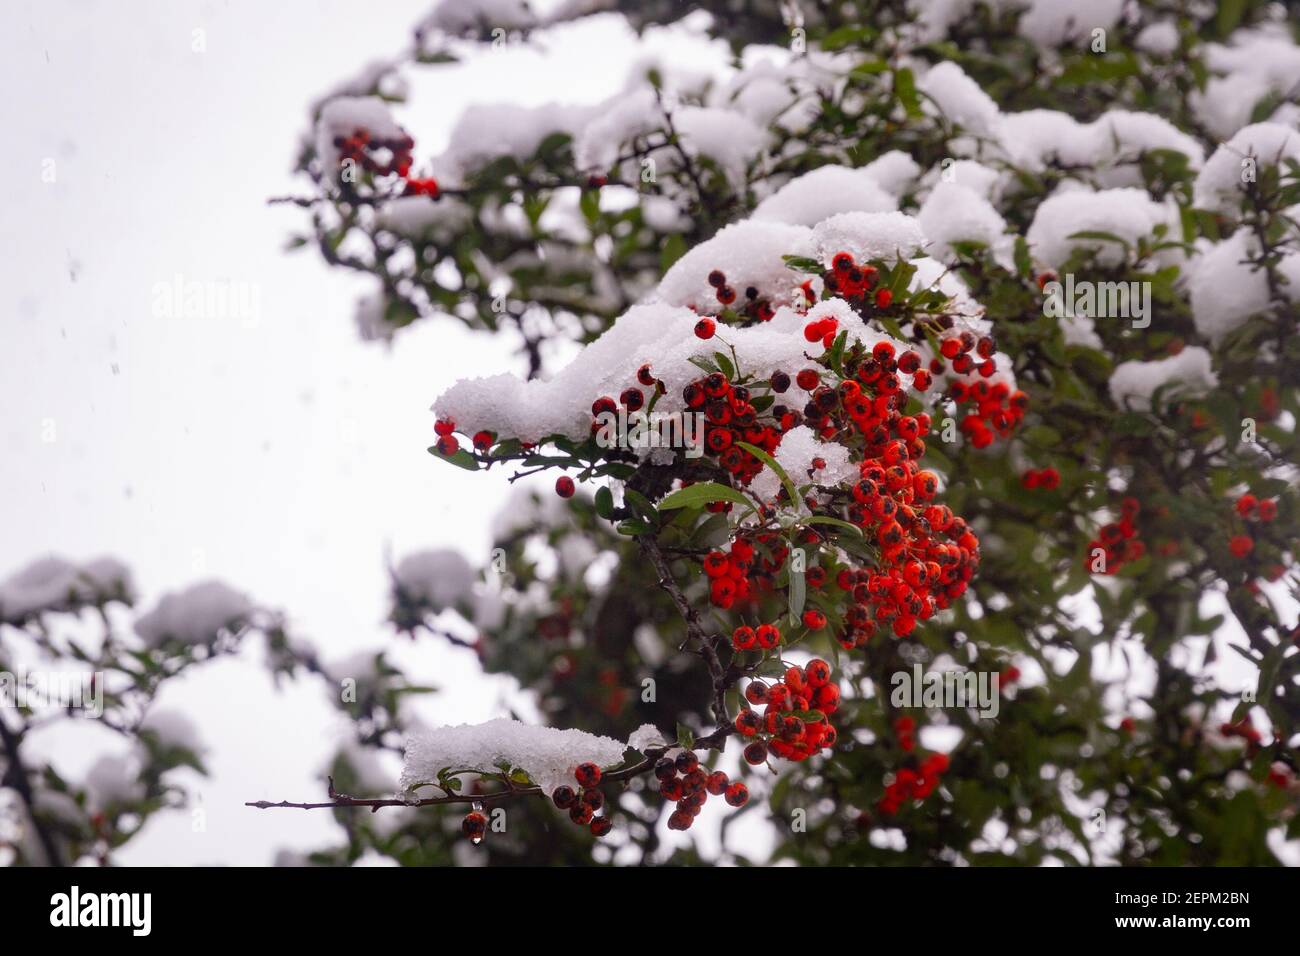 Dettaglio di alcune bacche rosse in un ramo di a. albero coperto di neve Foto Stock